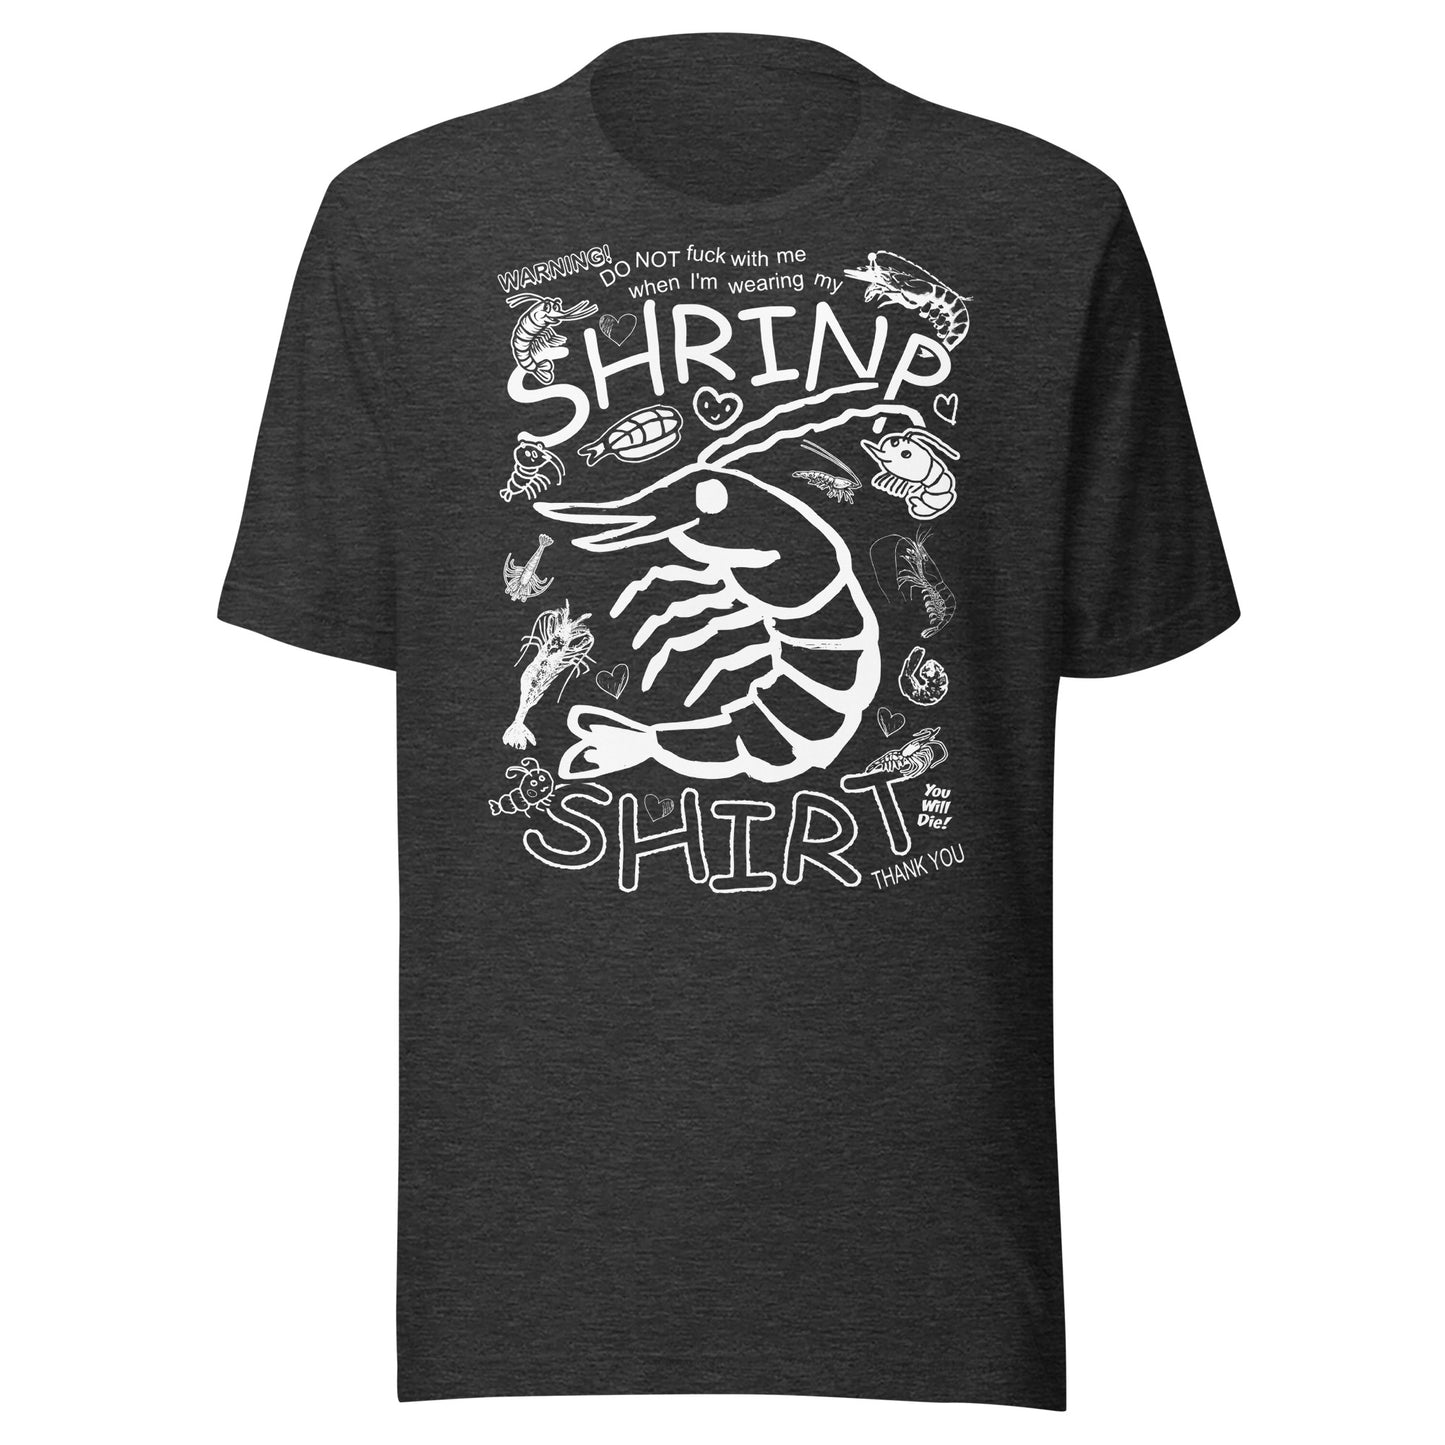 "CHEMISE SHRINP" T-shirt unisexe